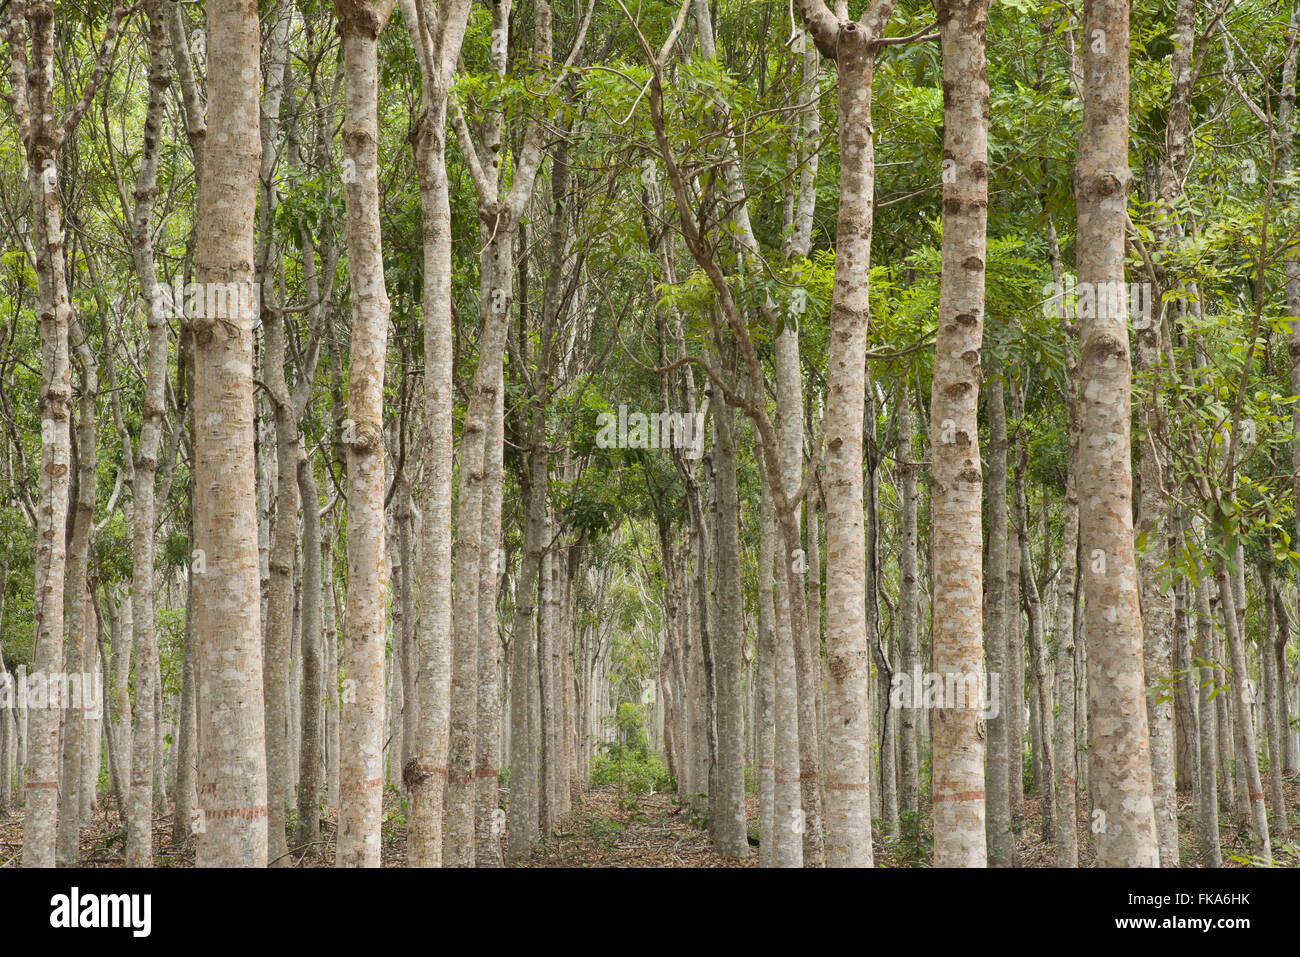 Mahogany plantation Stock Photo